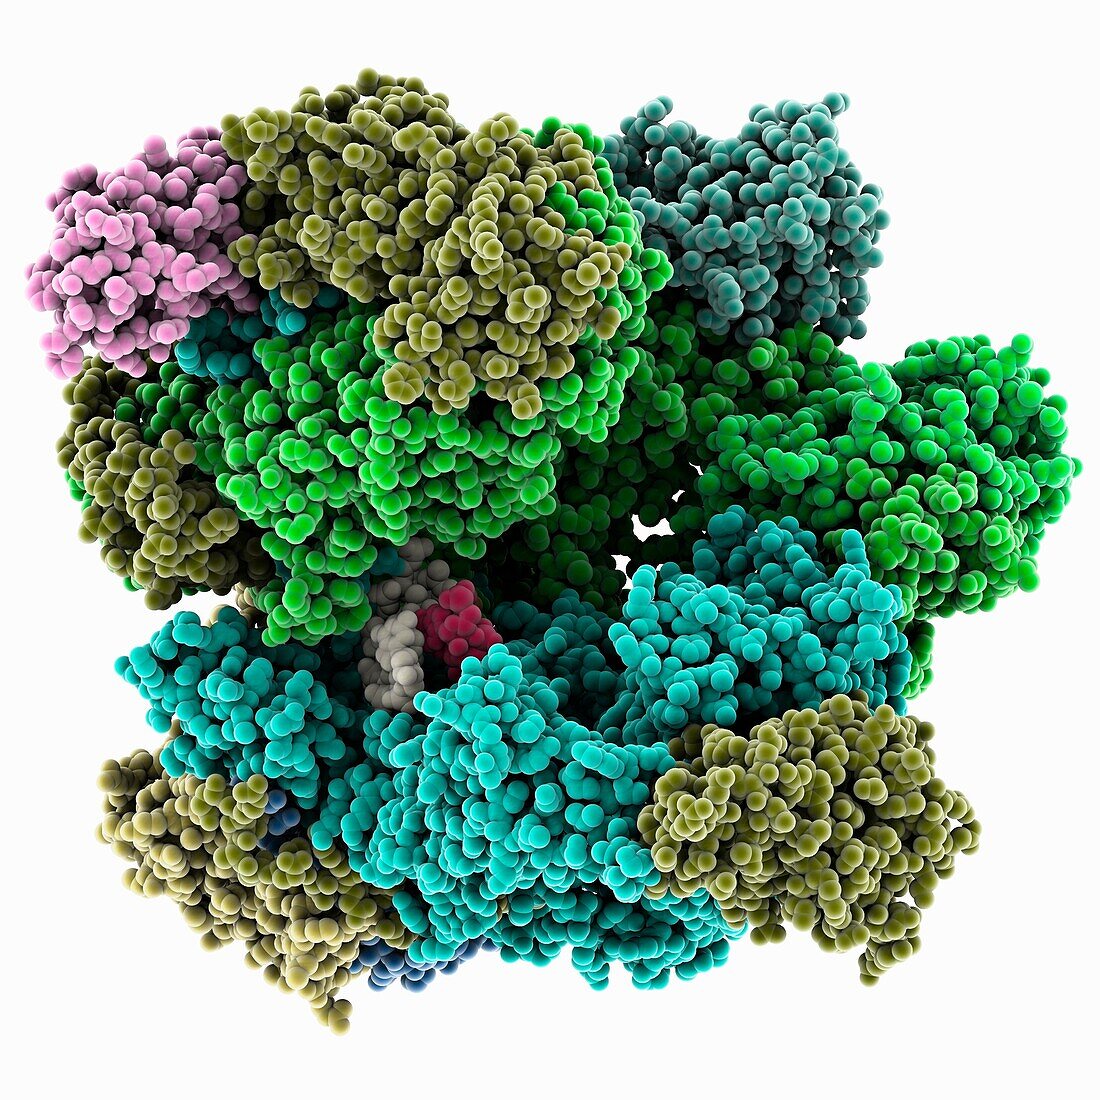 Poxvirus transcription process, molecular model